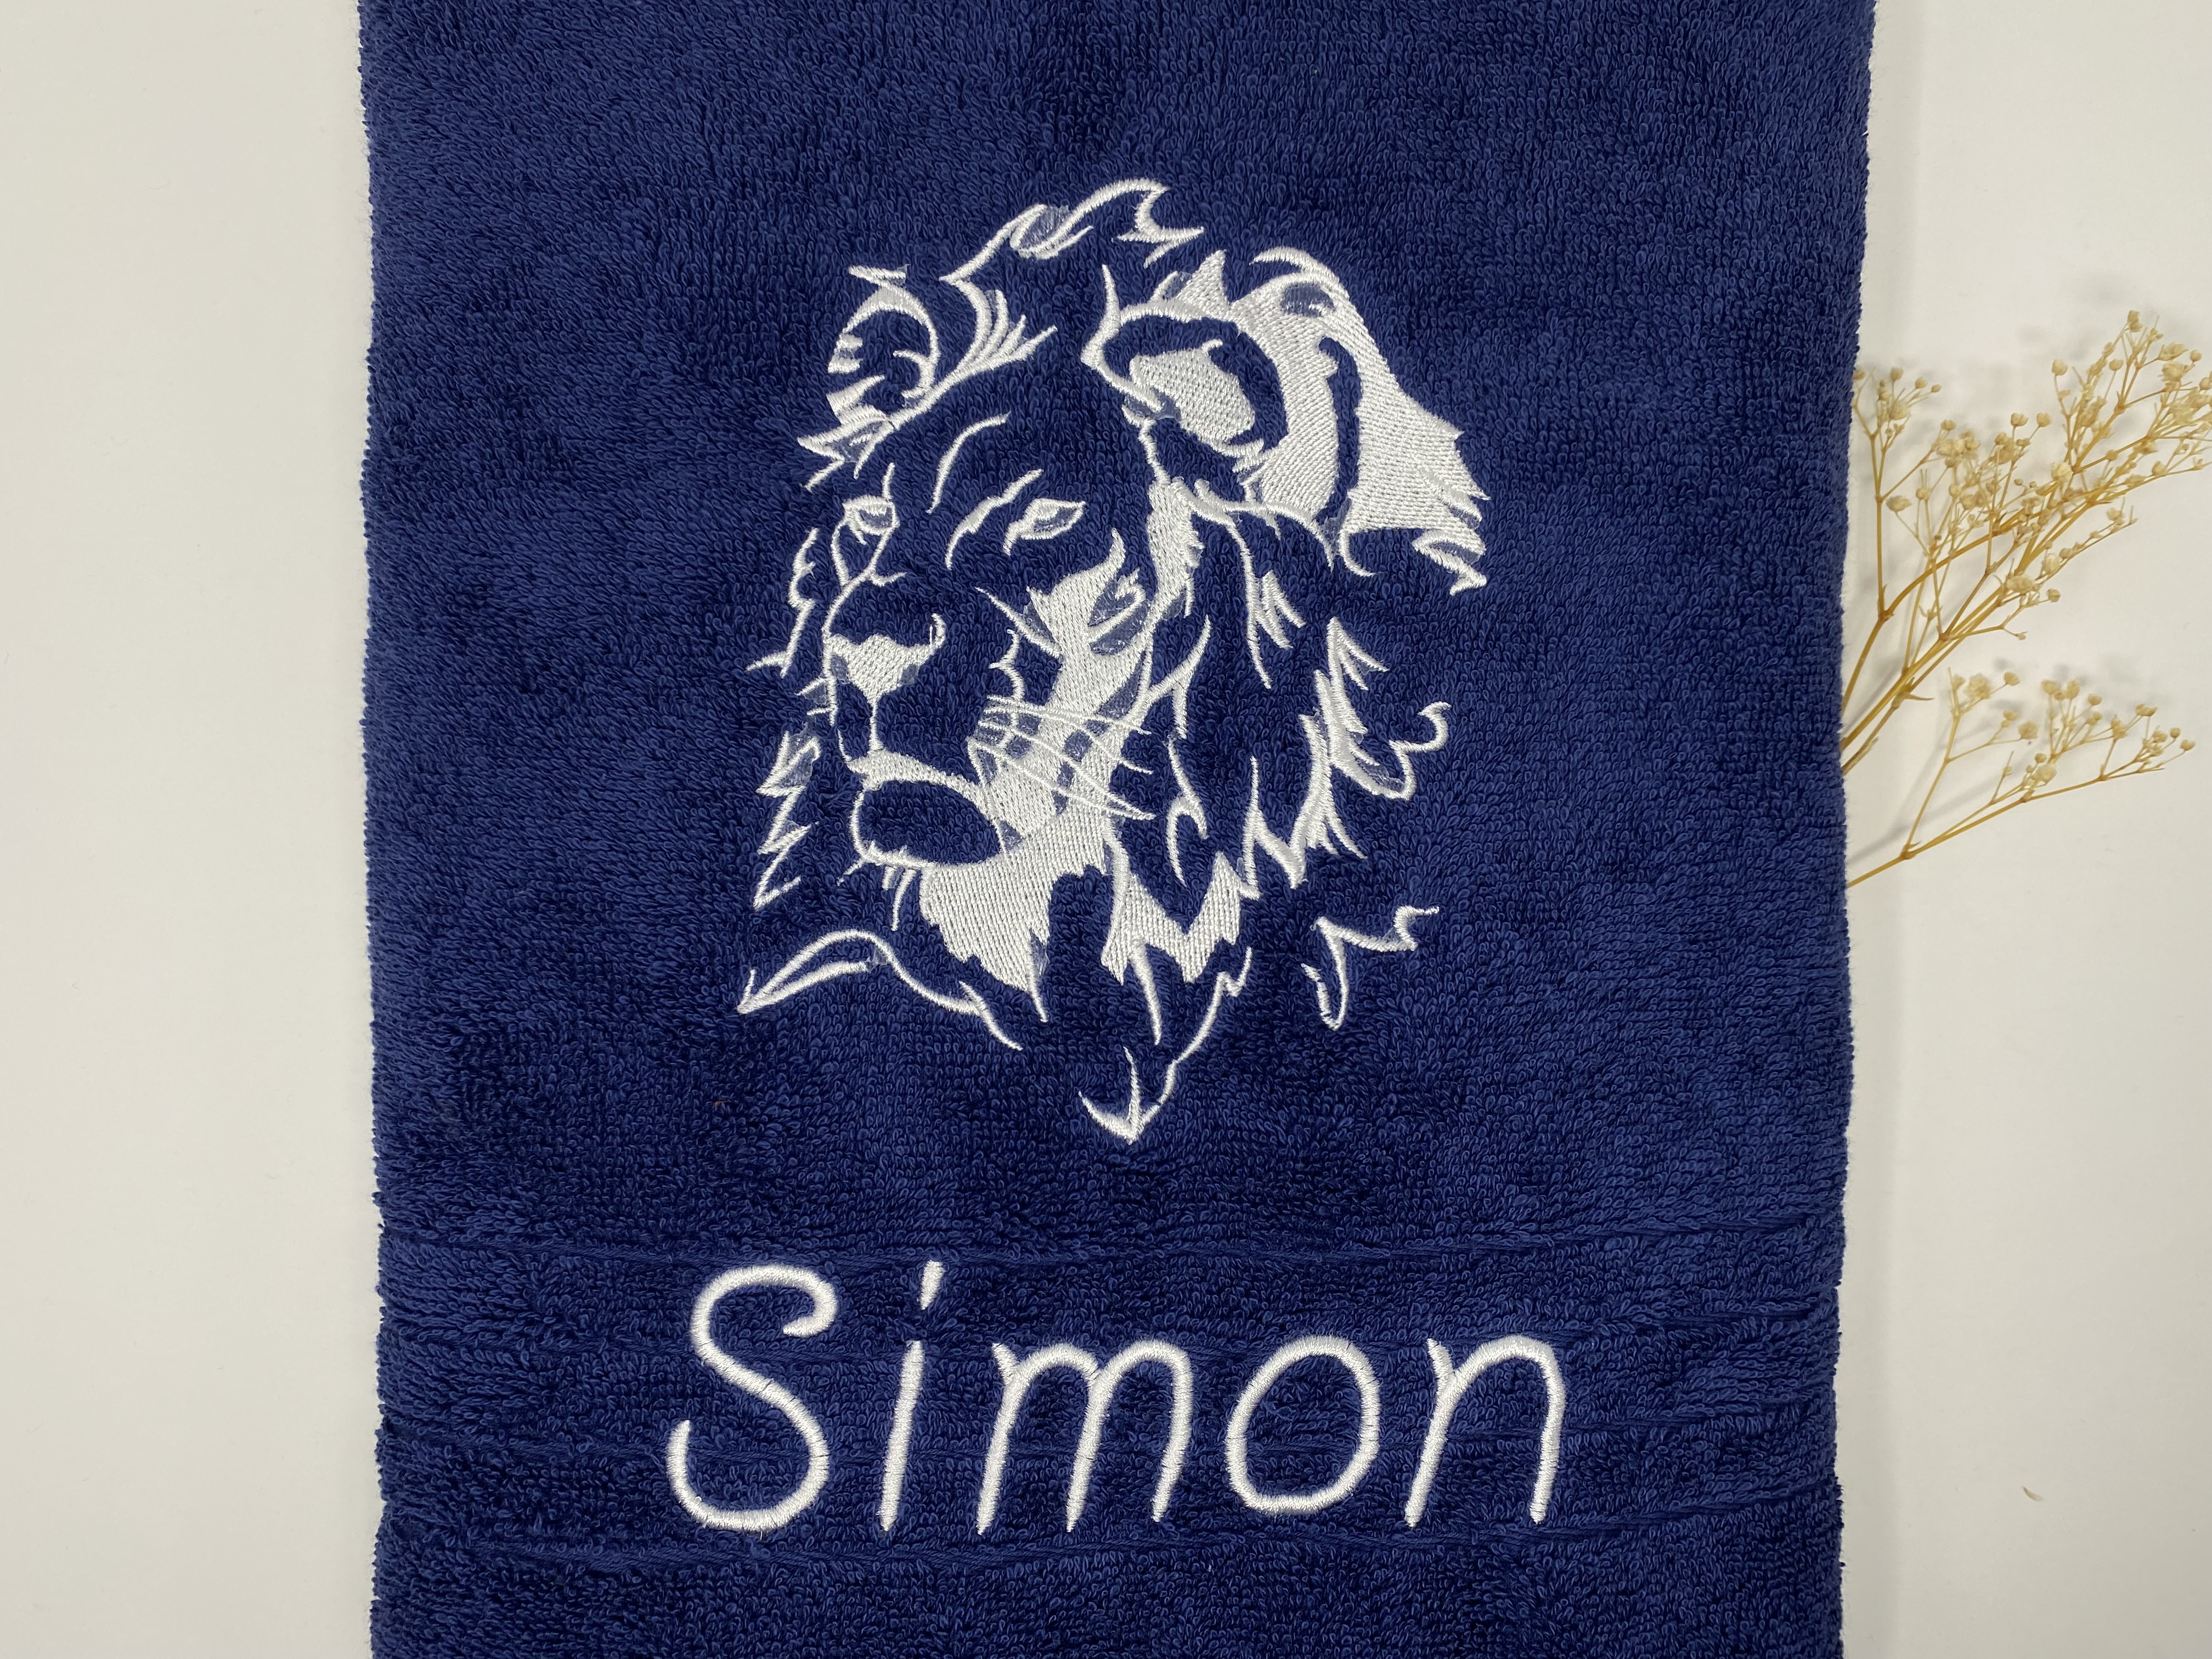 Löwe Löwen Handtuch Duschtuch bestickt & personalisierbar Super Qualität